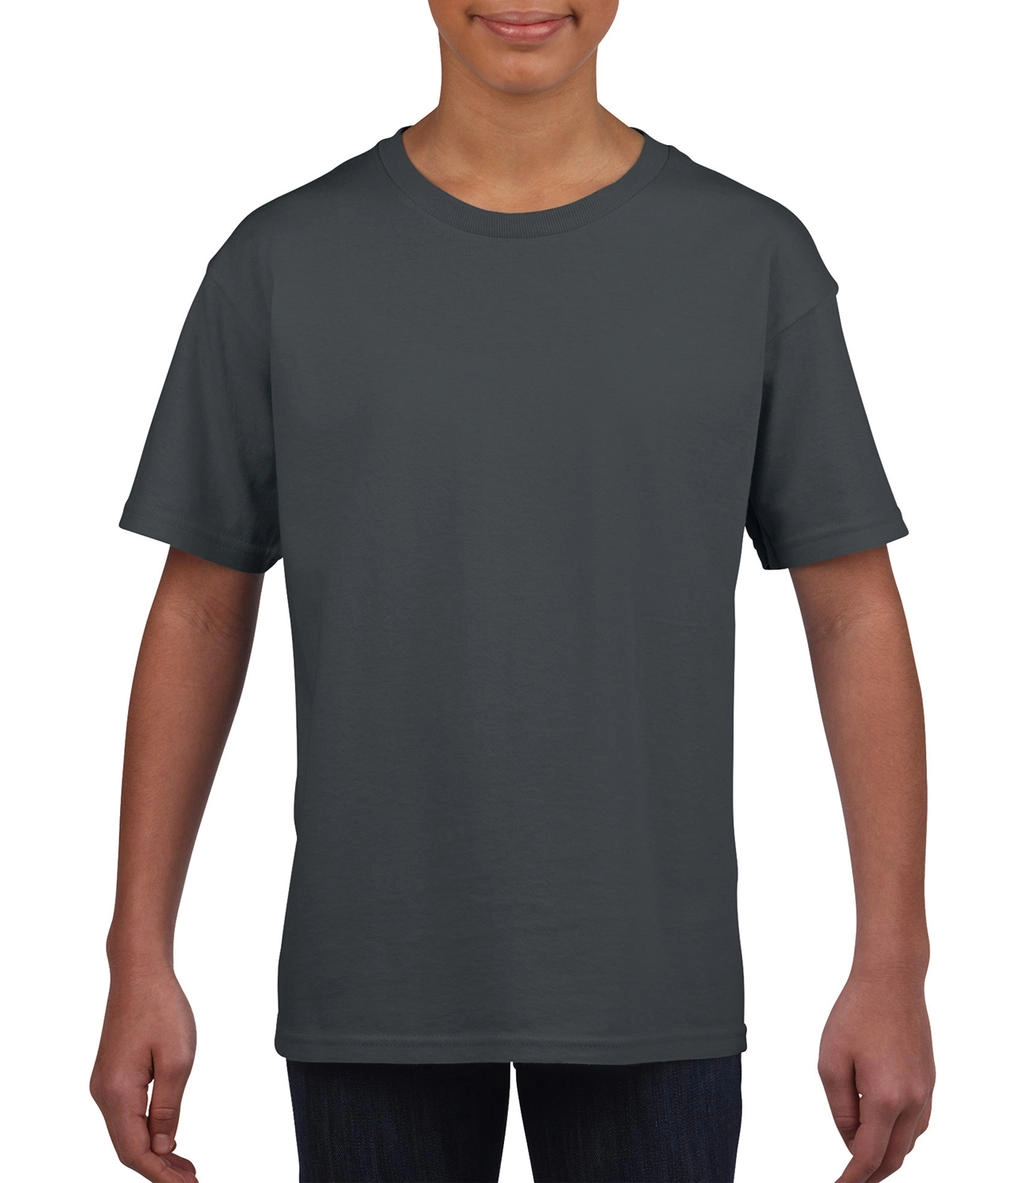 Softstyle® Youth T-Shirt zum Besticken und Bedrucken in der Farbe Charcoal mit Ihren Logo, Schriftzug oder Motiv.